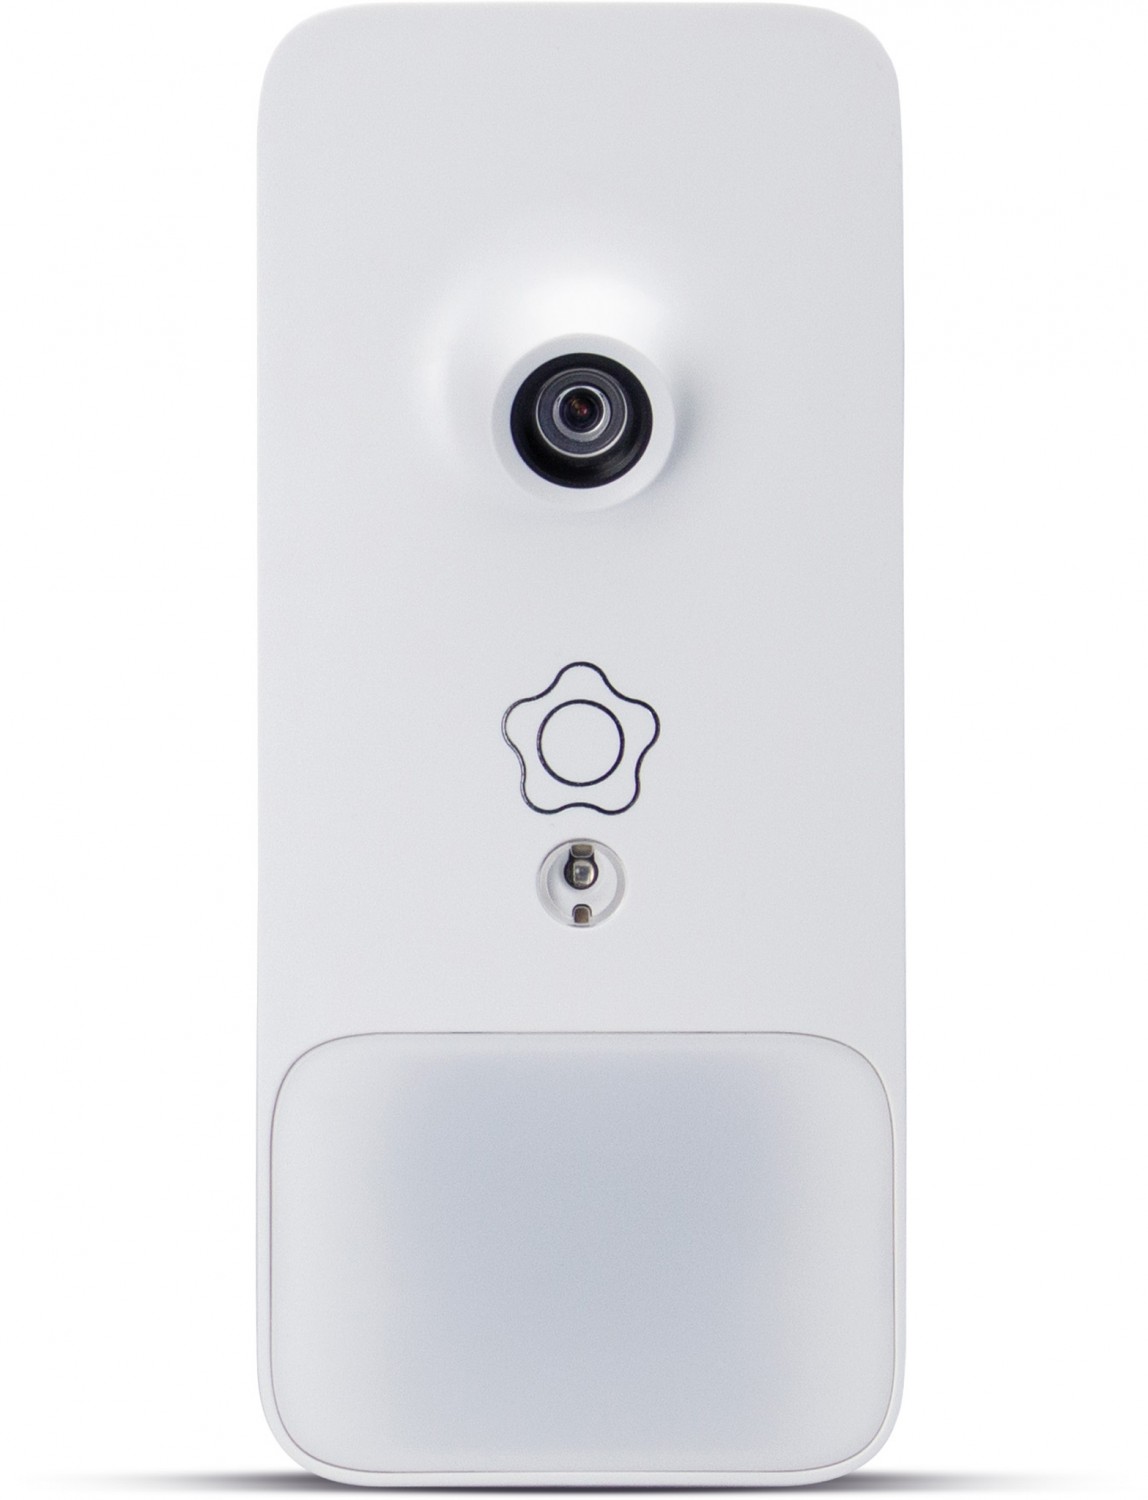 Smart Home Alarmanlage Verisure Alarmsystem mit ZeroVision im Test, Bild 9